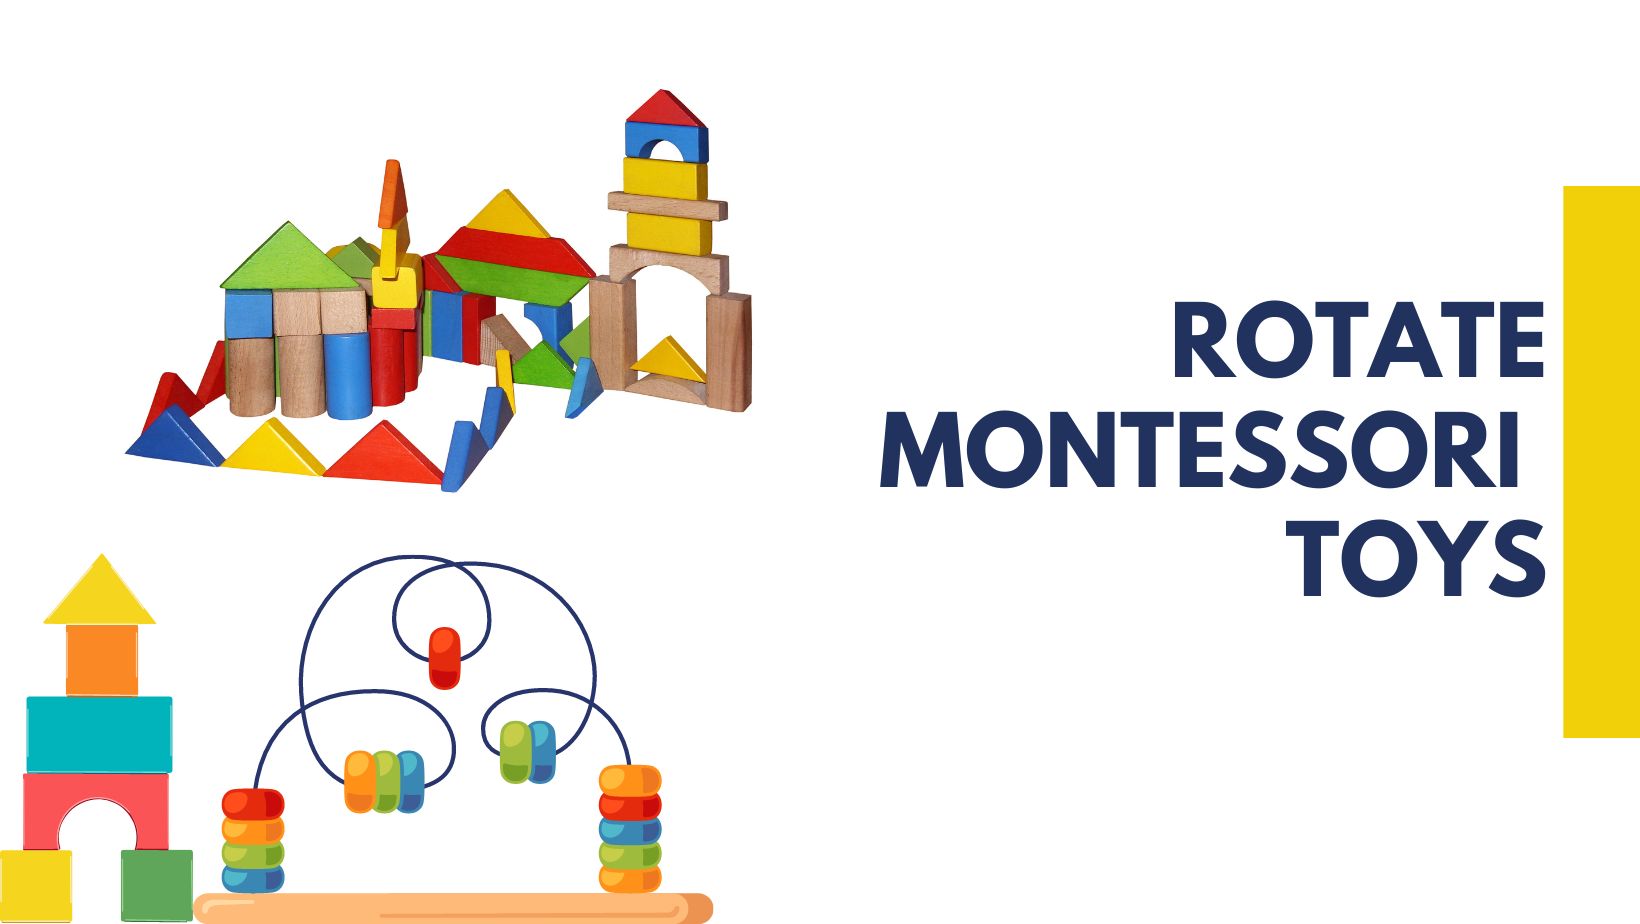 How to Rotate Montessori Toys?